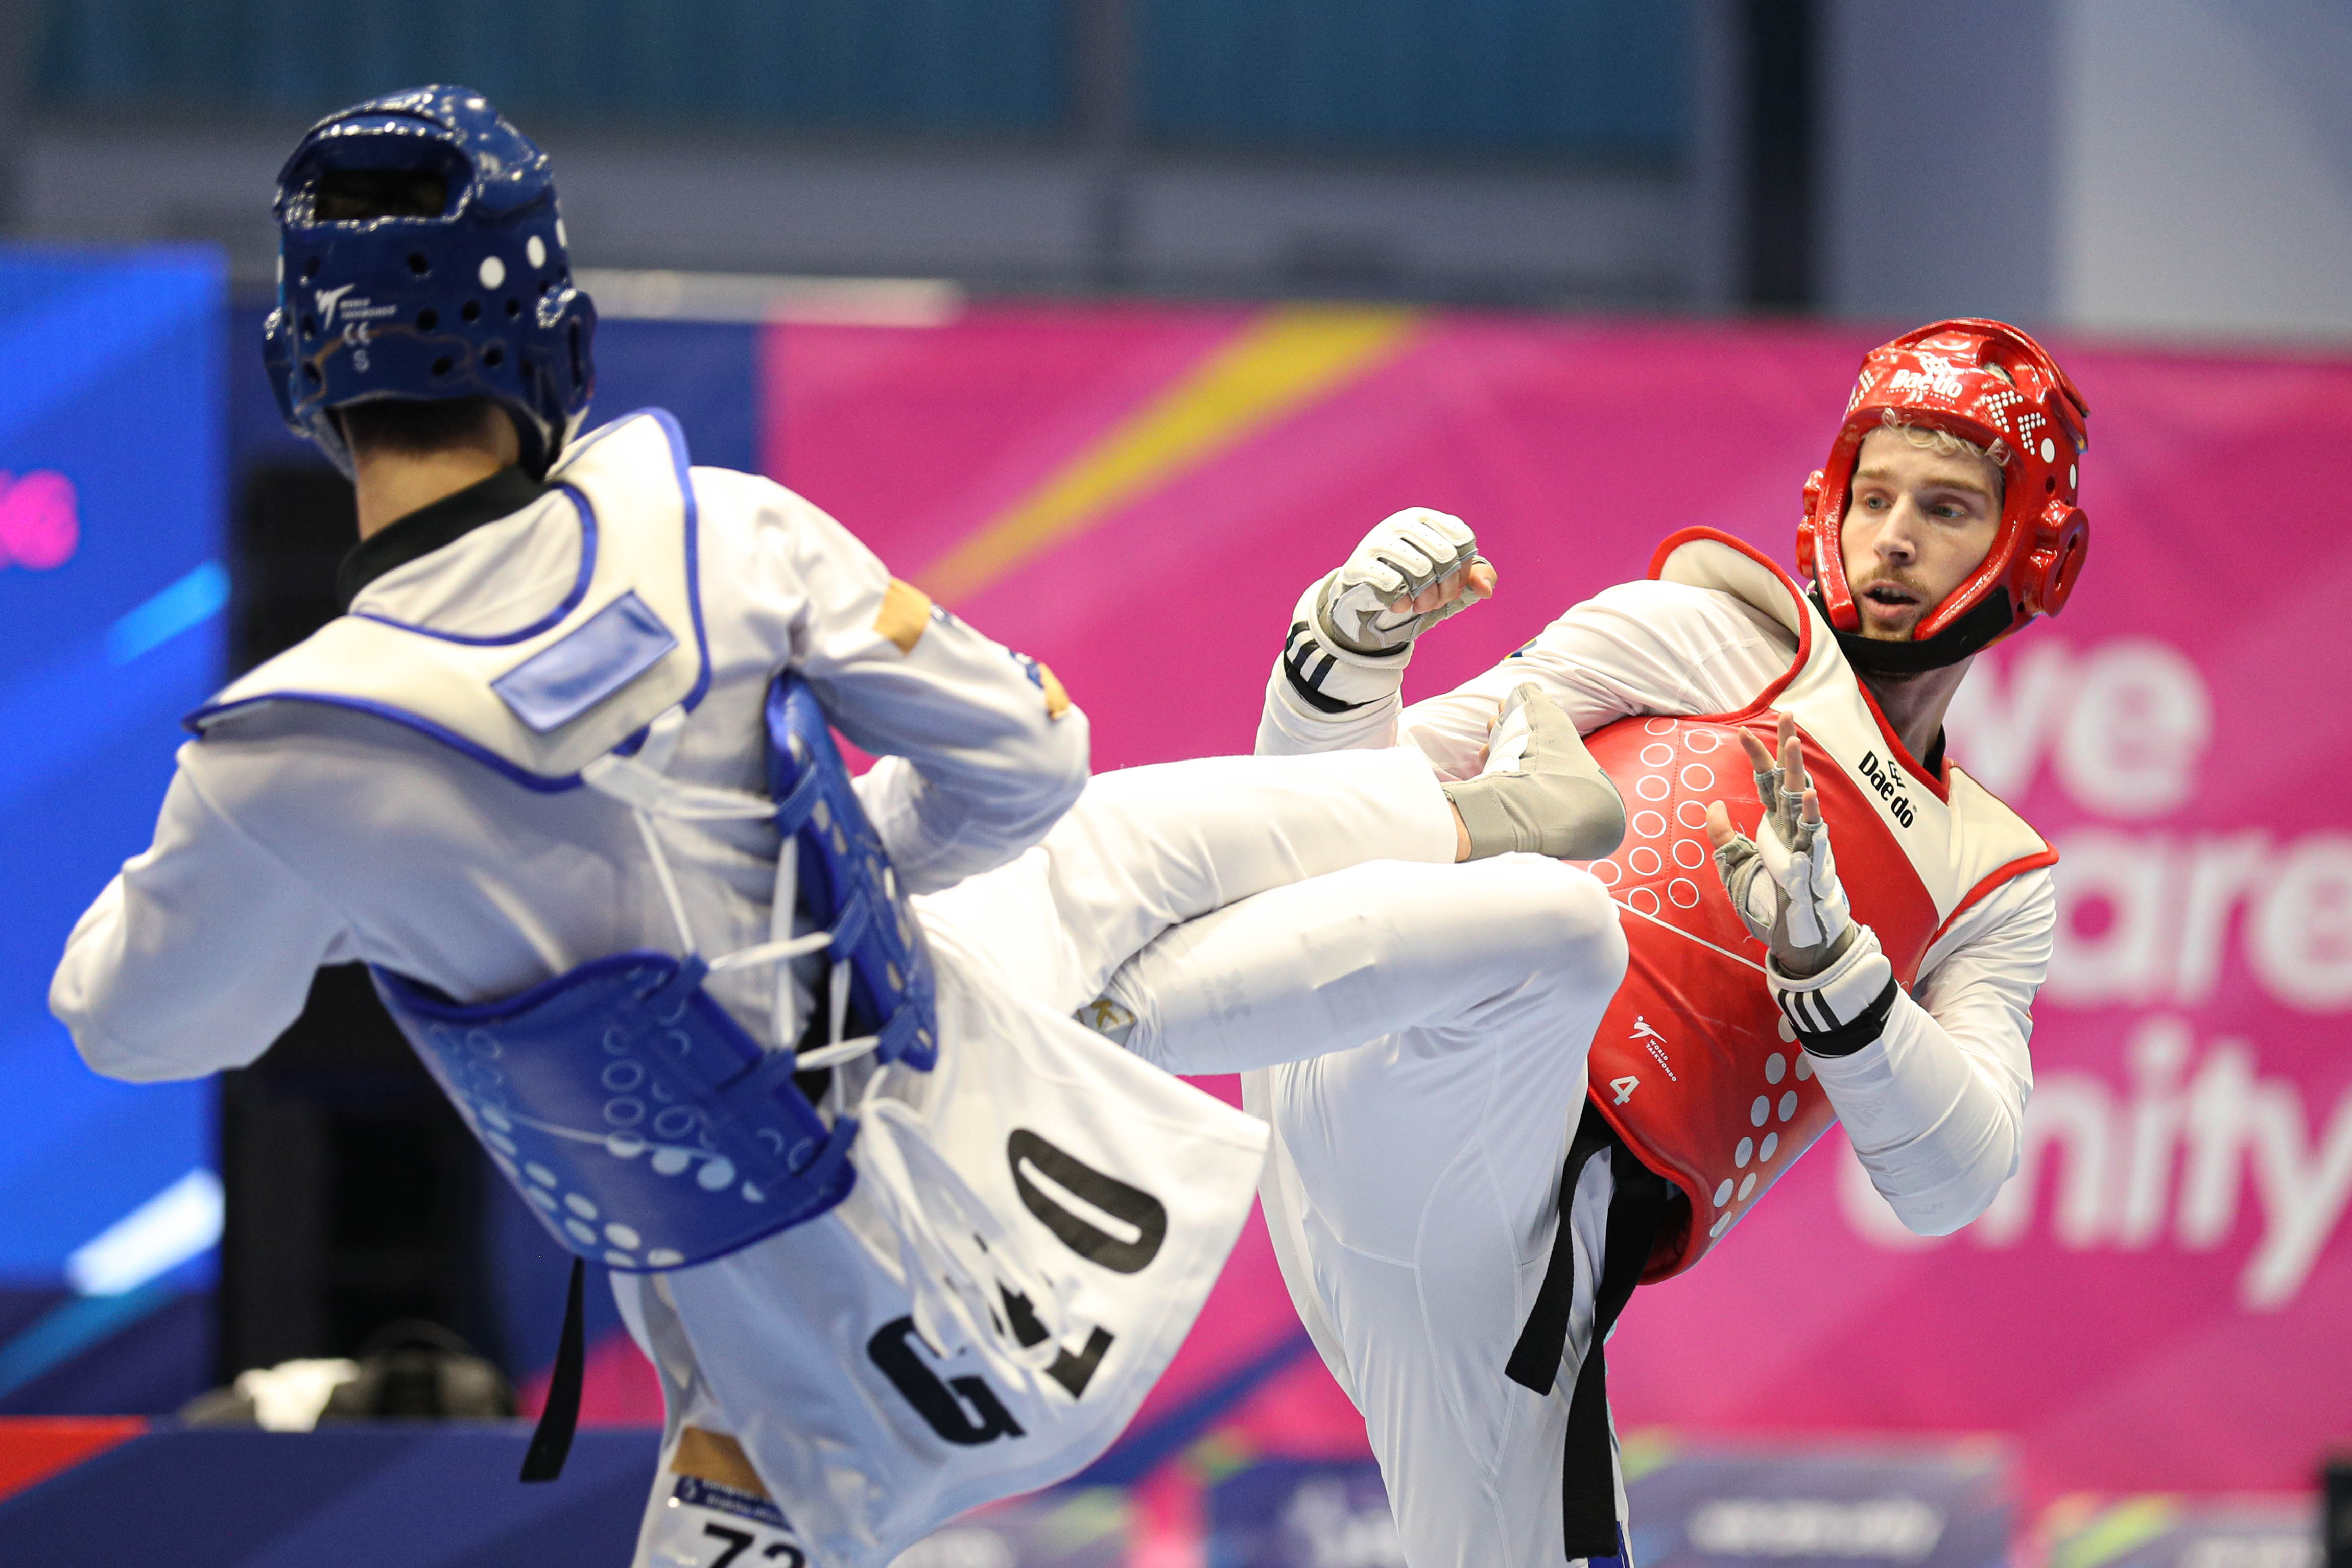 Niezwykłe historie na turnieju taekwondo podczas Igrzysk Europejskich